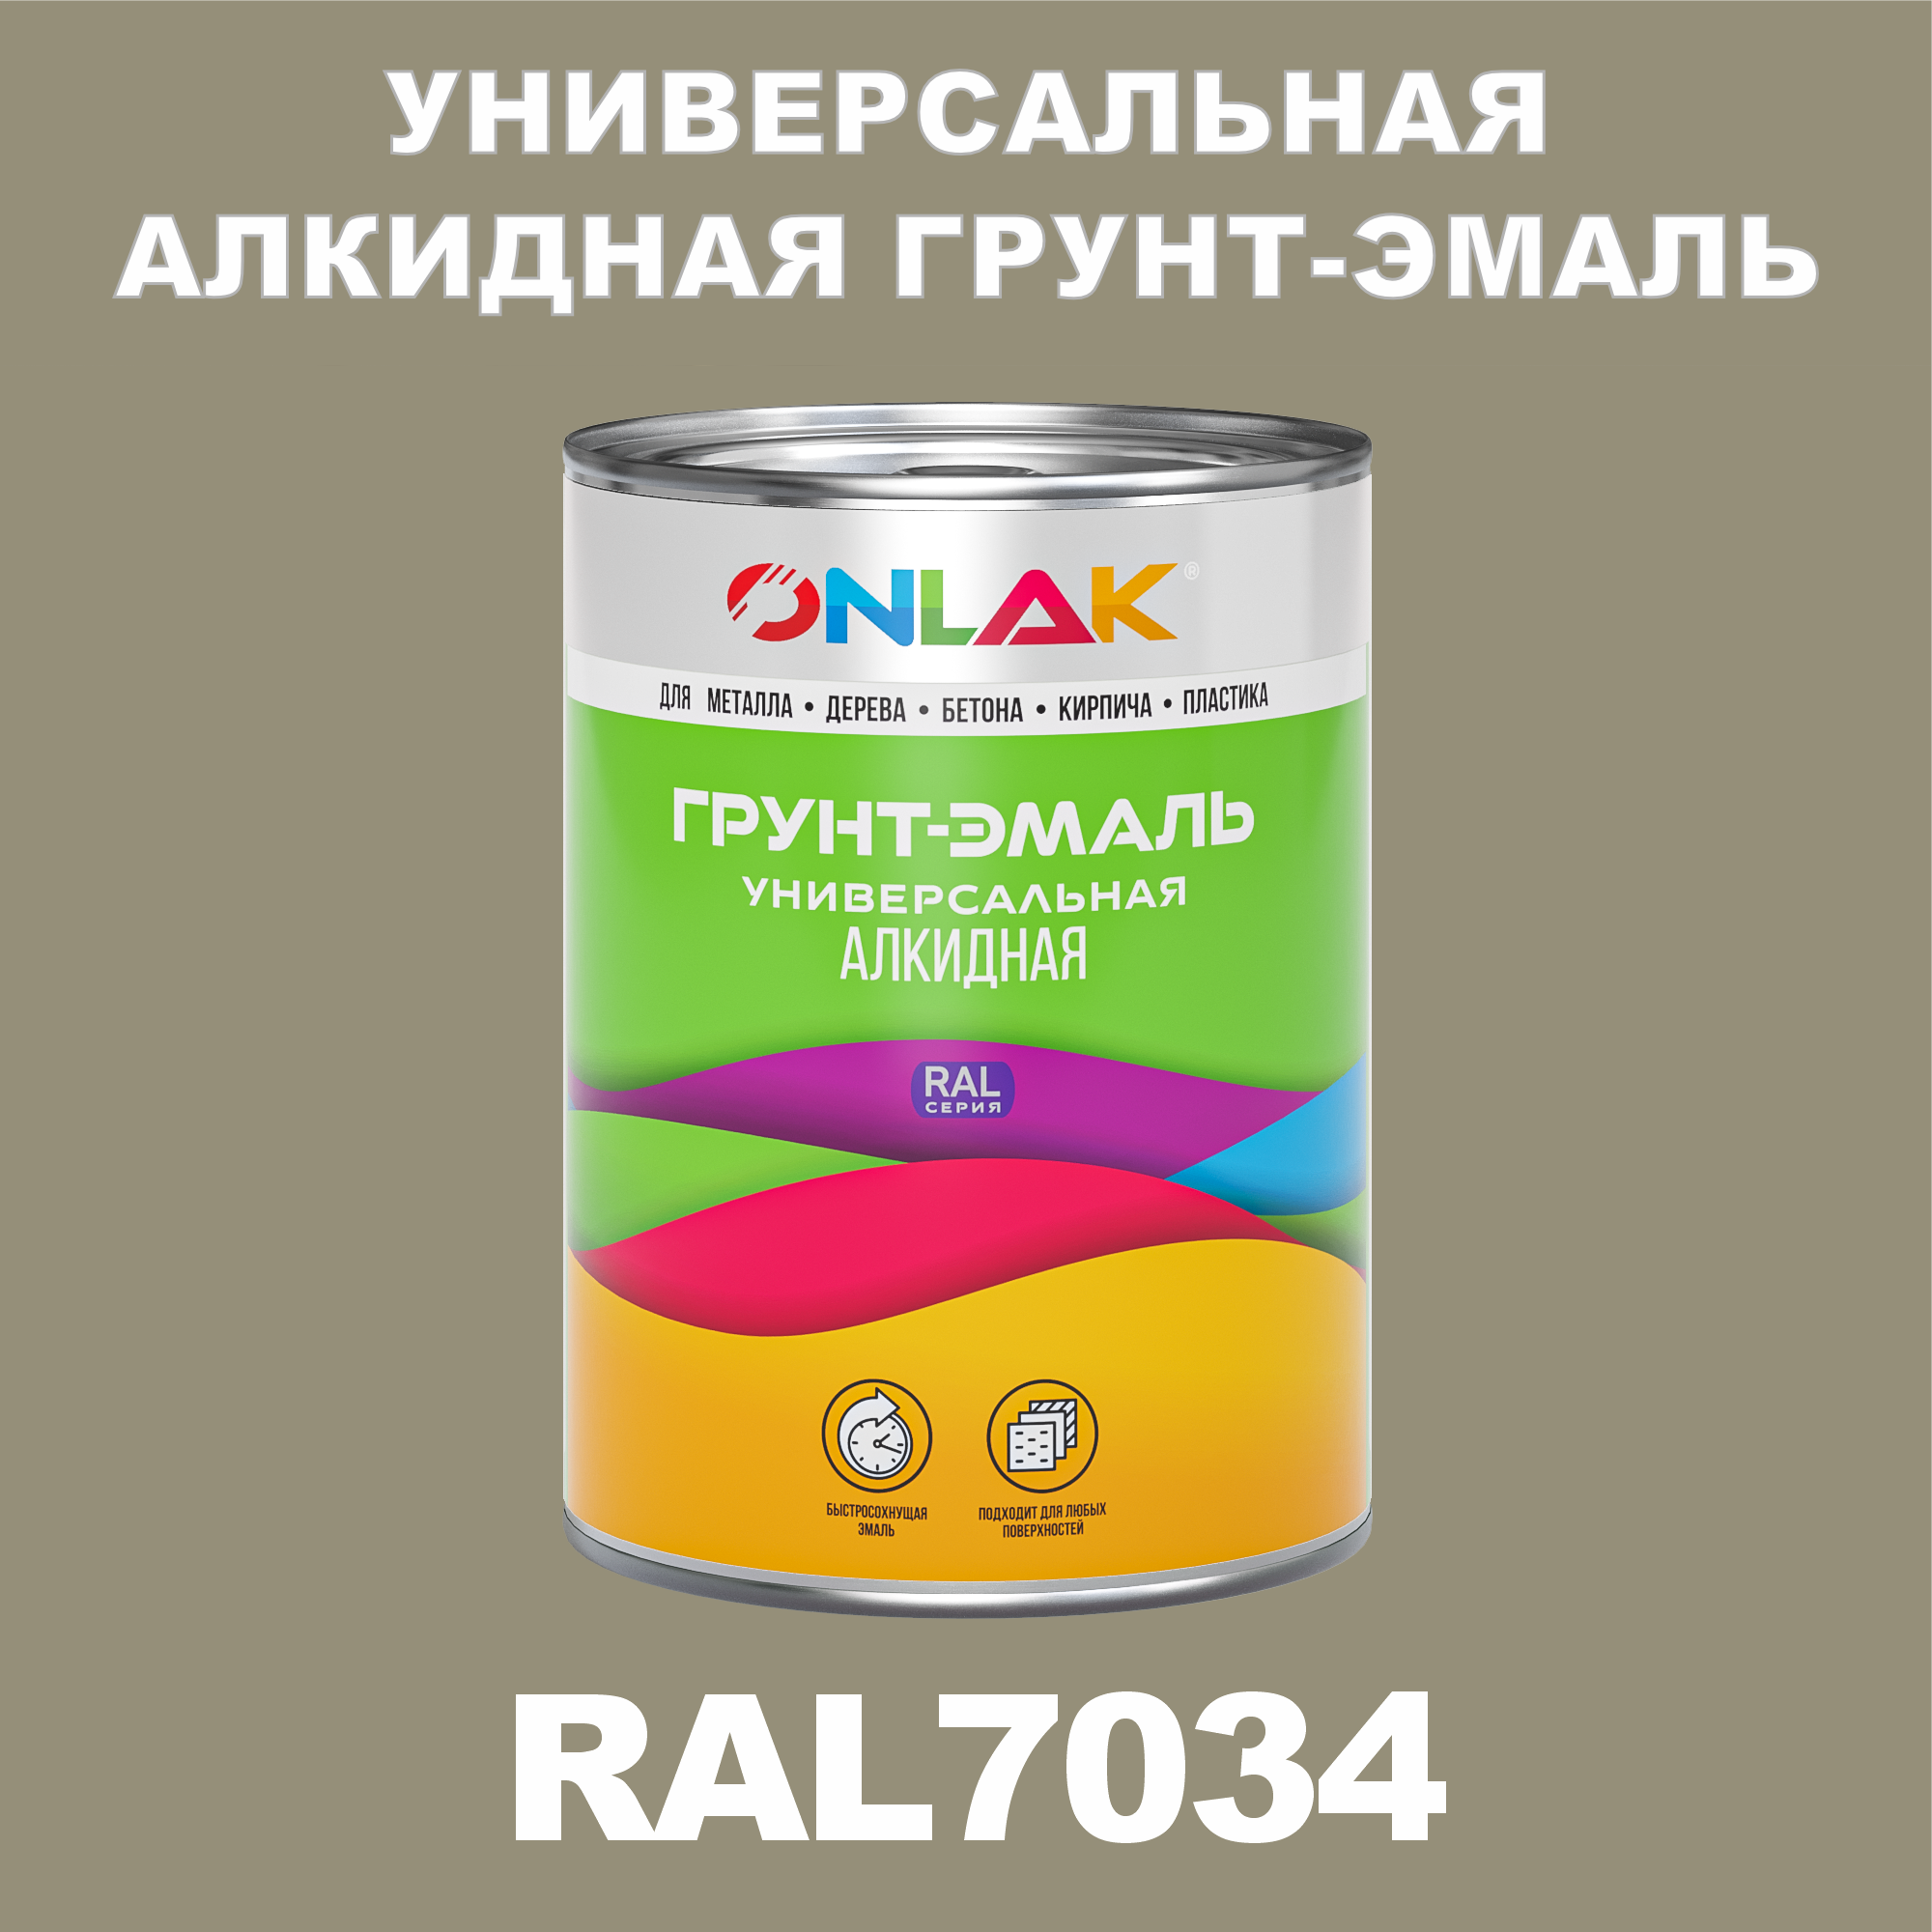 Грунт-эмаль ONLAK 1К RAL7034 антикоррозионная алкидная по металлу по ржавчине 1 кг